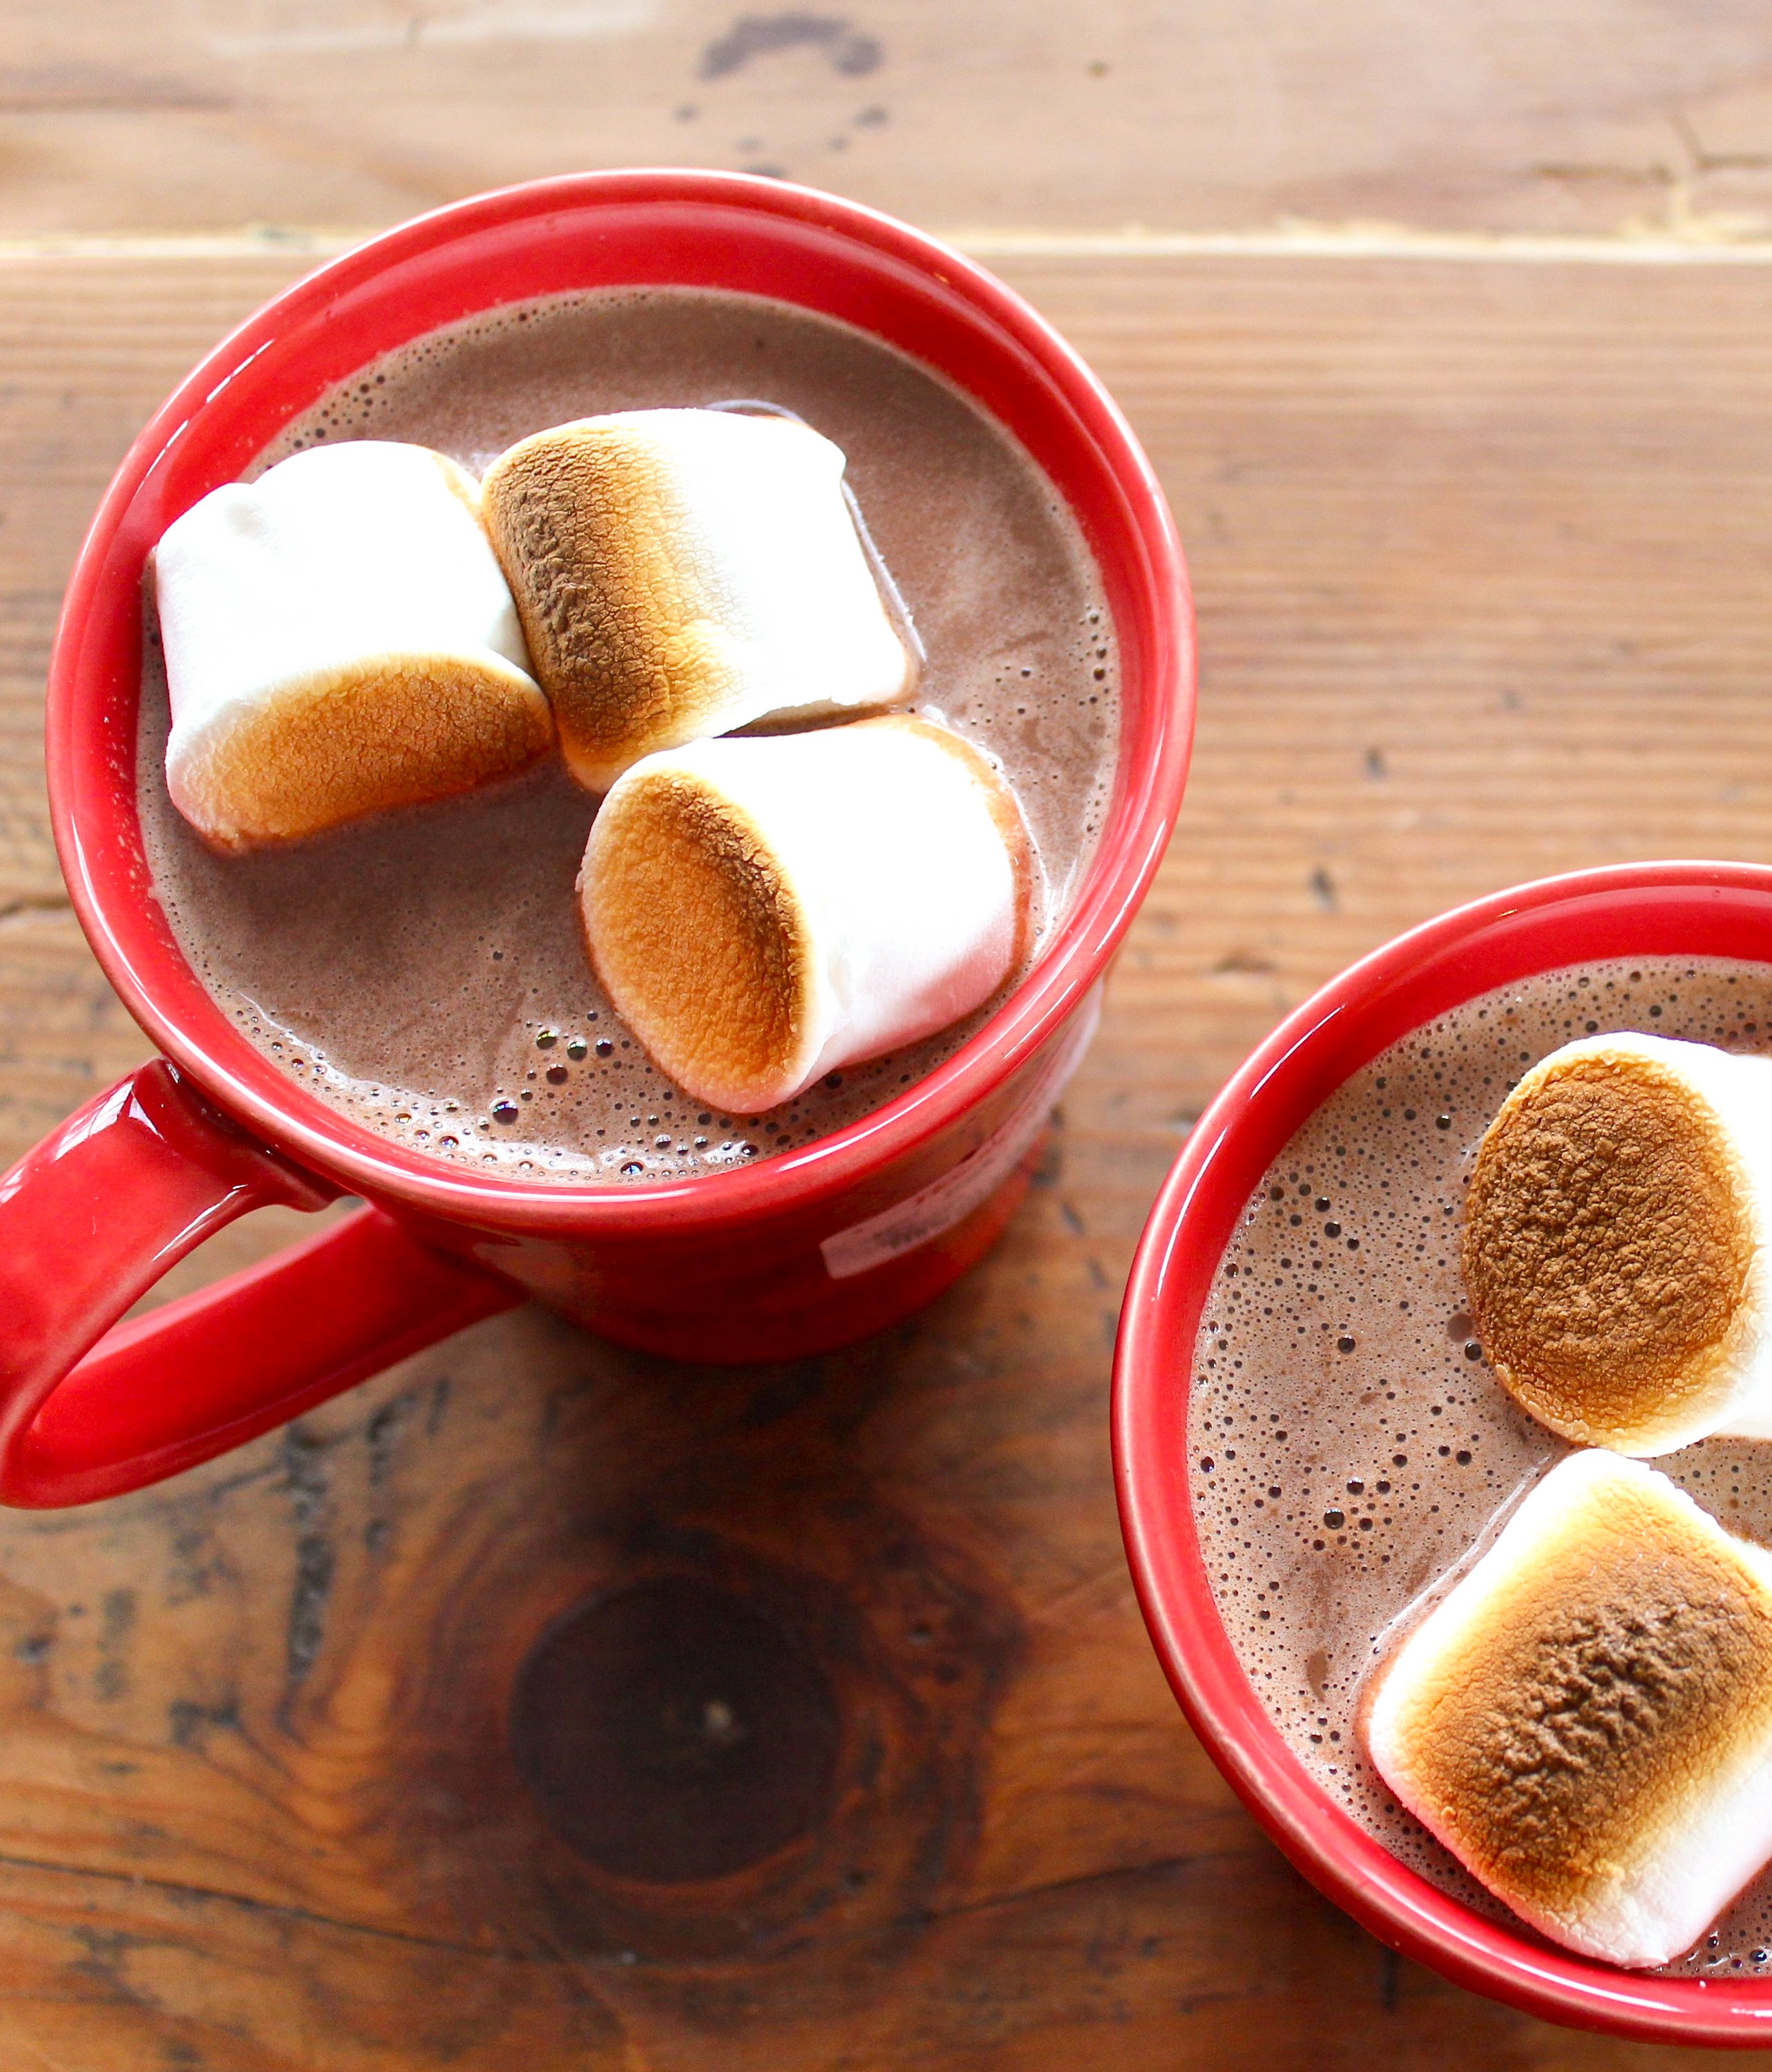 Boozy Buckeye Hot Chocolate